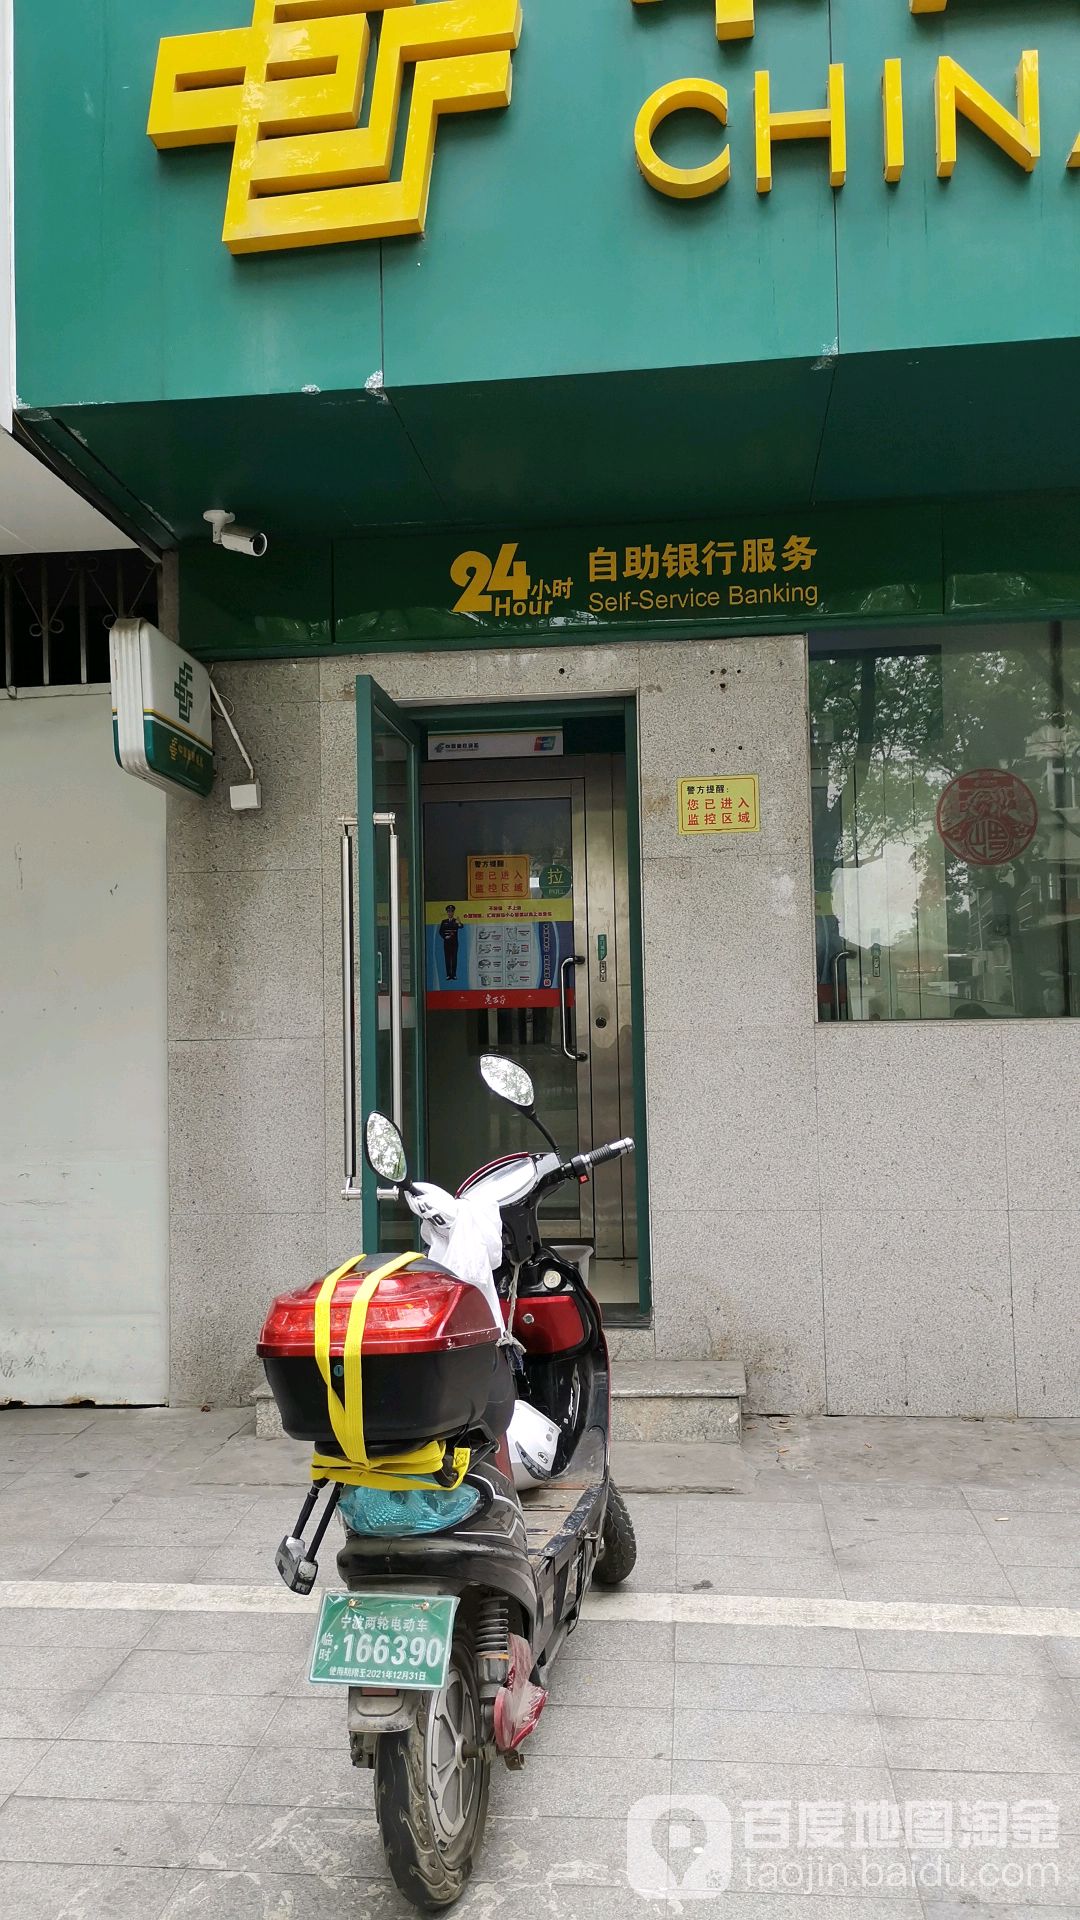 中國郵政儲蓄銀行24小時自助銀行(莊橋大街店)